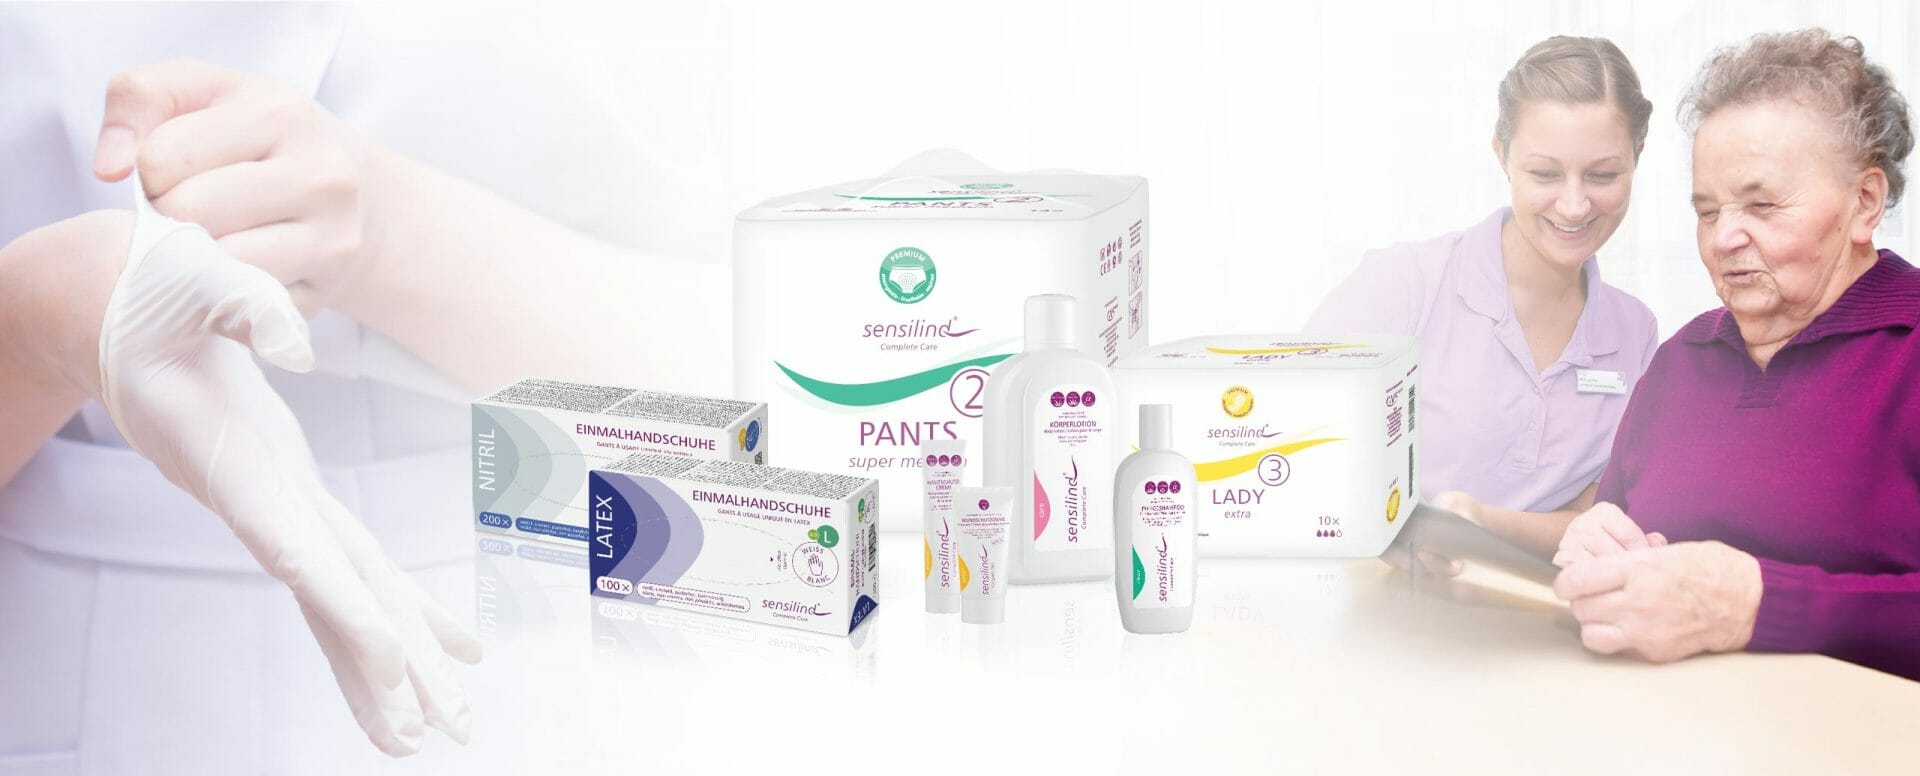 Komposing verschiedener Sensilind-Produkte, Untersuchungshandschuhe, Inkontinenz- und Körperpflegeprodukte